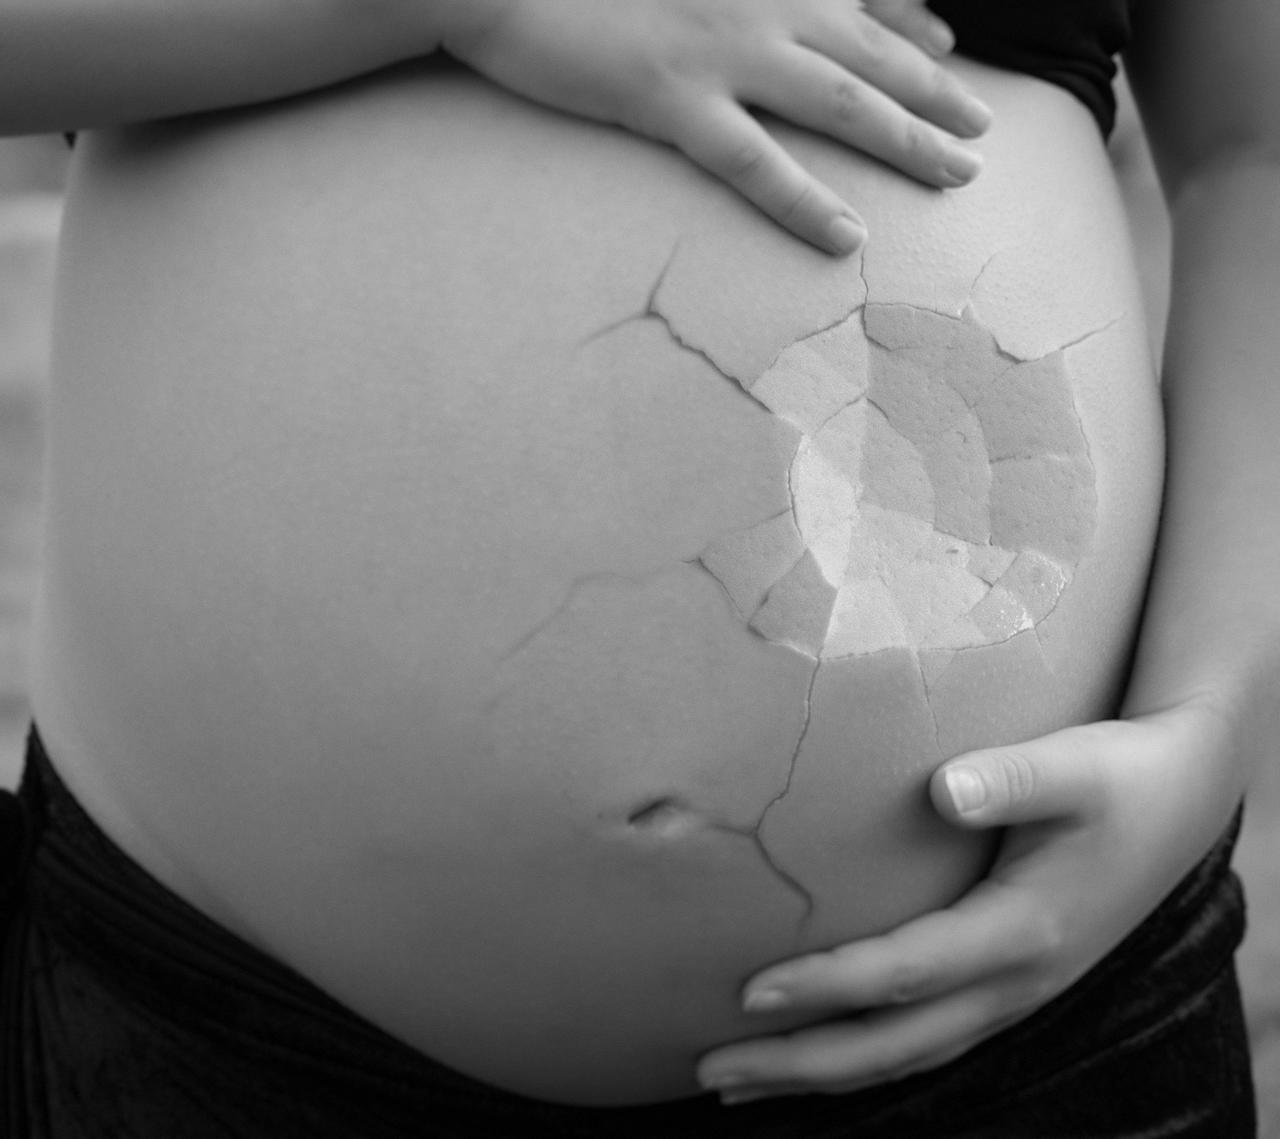 En 2020 acompañaron entre 150 y 200 mujeres que decidieron interrumpir su embarazo. (PIXABAY)